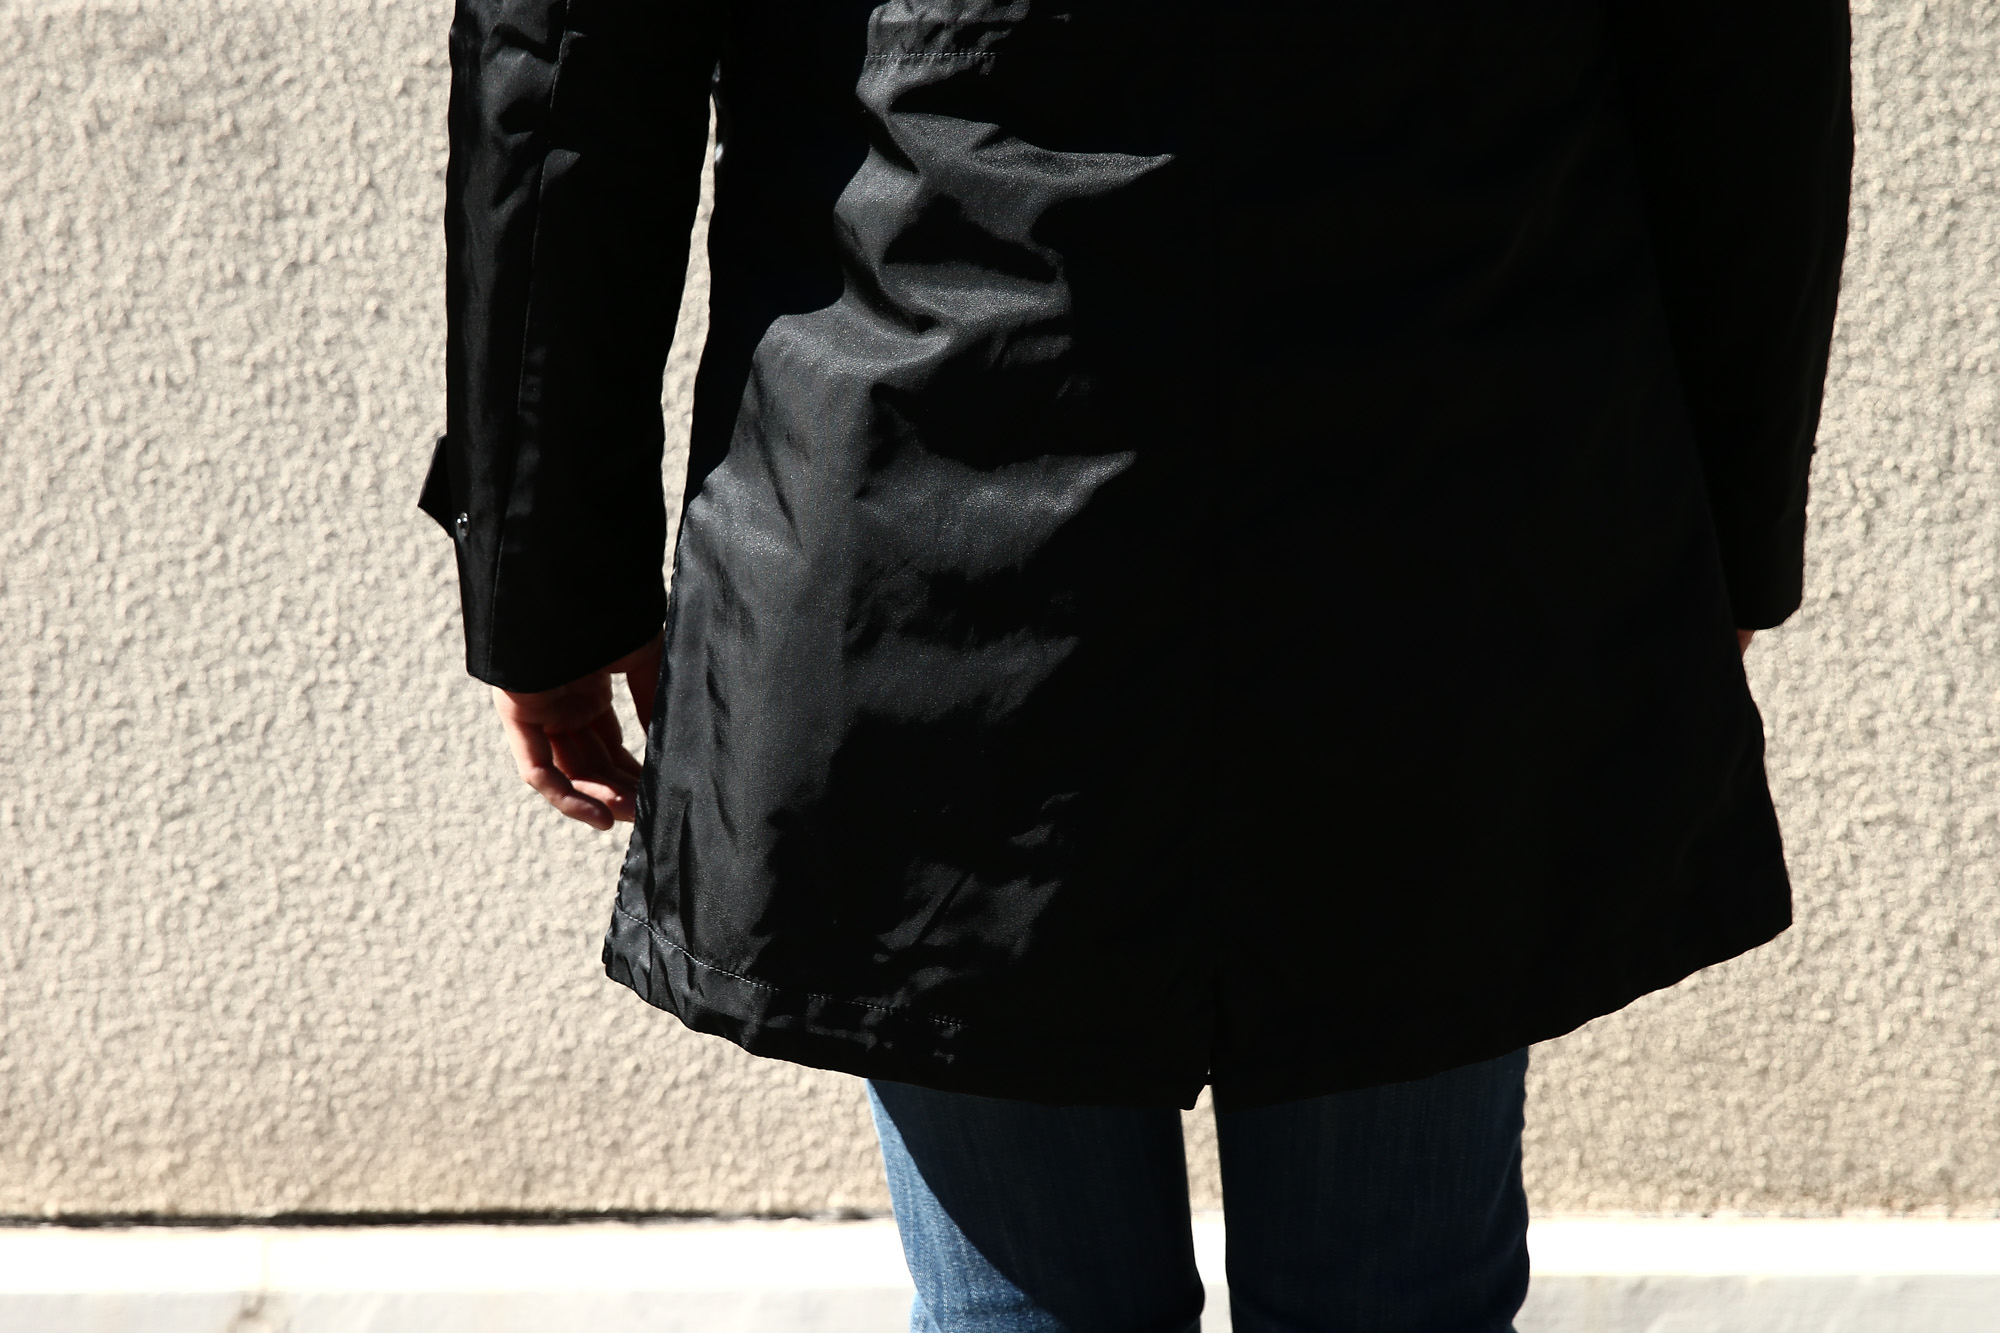 【Sealup // シーラップ】 M51 Mods coat (M51 モッズコート) サーモアライニング ダウンライナー付き モッズコート BLACK (ブラック・36) Made in italy (イタリア製) 2017 秋冬新作 sealup シーラップ 愛知 名古屋 Alto e Diritto アルト エ デリット